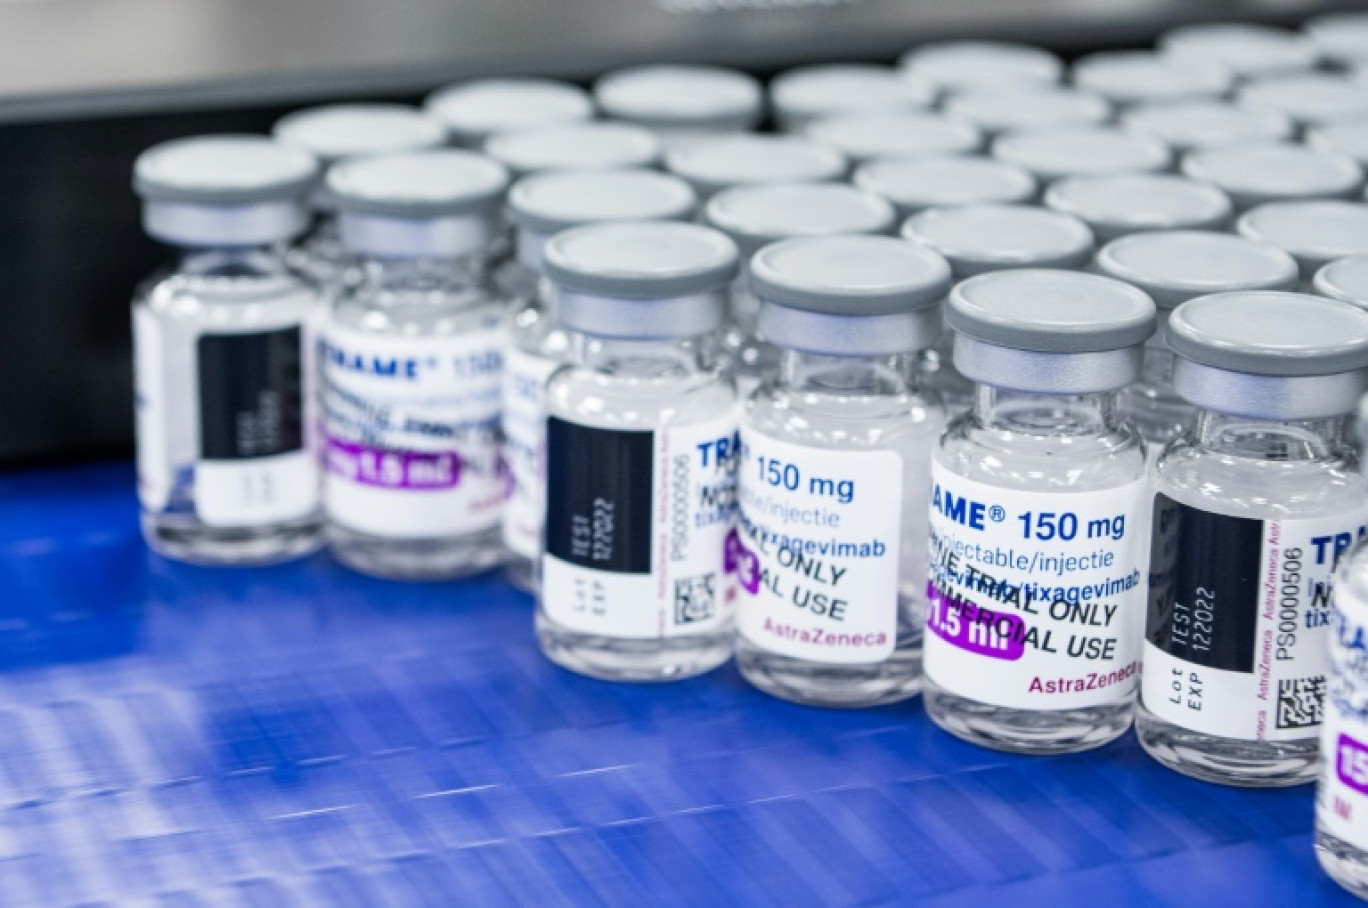 Le géant pharmaceutique britannique Astrazeneca annonce retirer de la vente son vaccin contre le Covid-19 Vaxzevria, l'un des premiers mis sur le marché pendant la pandémie, citant une chute de la demande © Jonathan NACKSTRAND